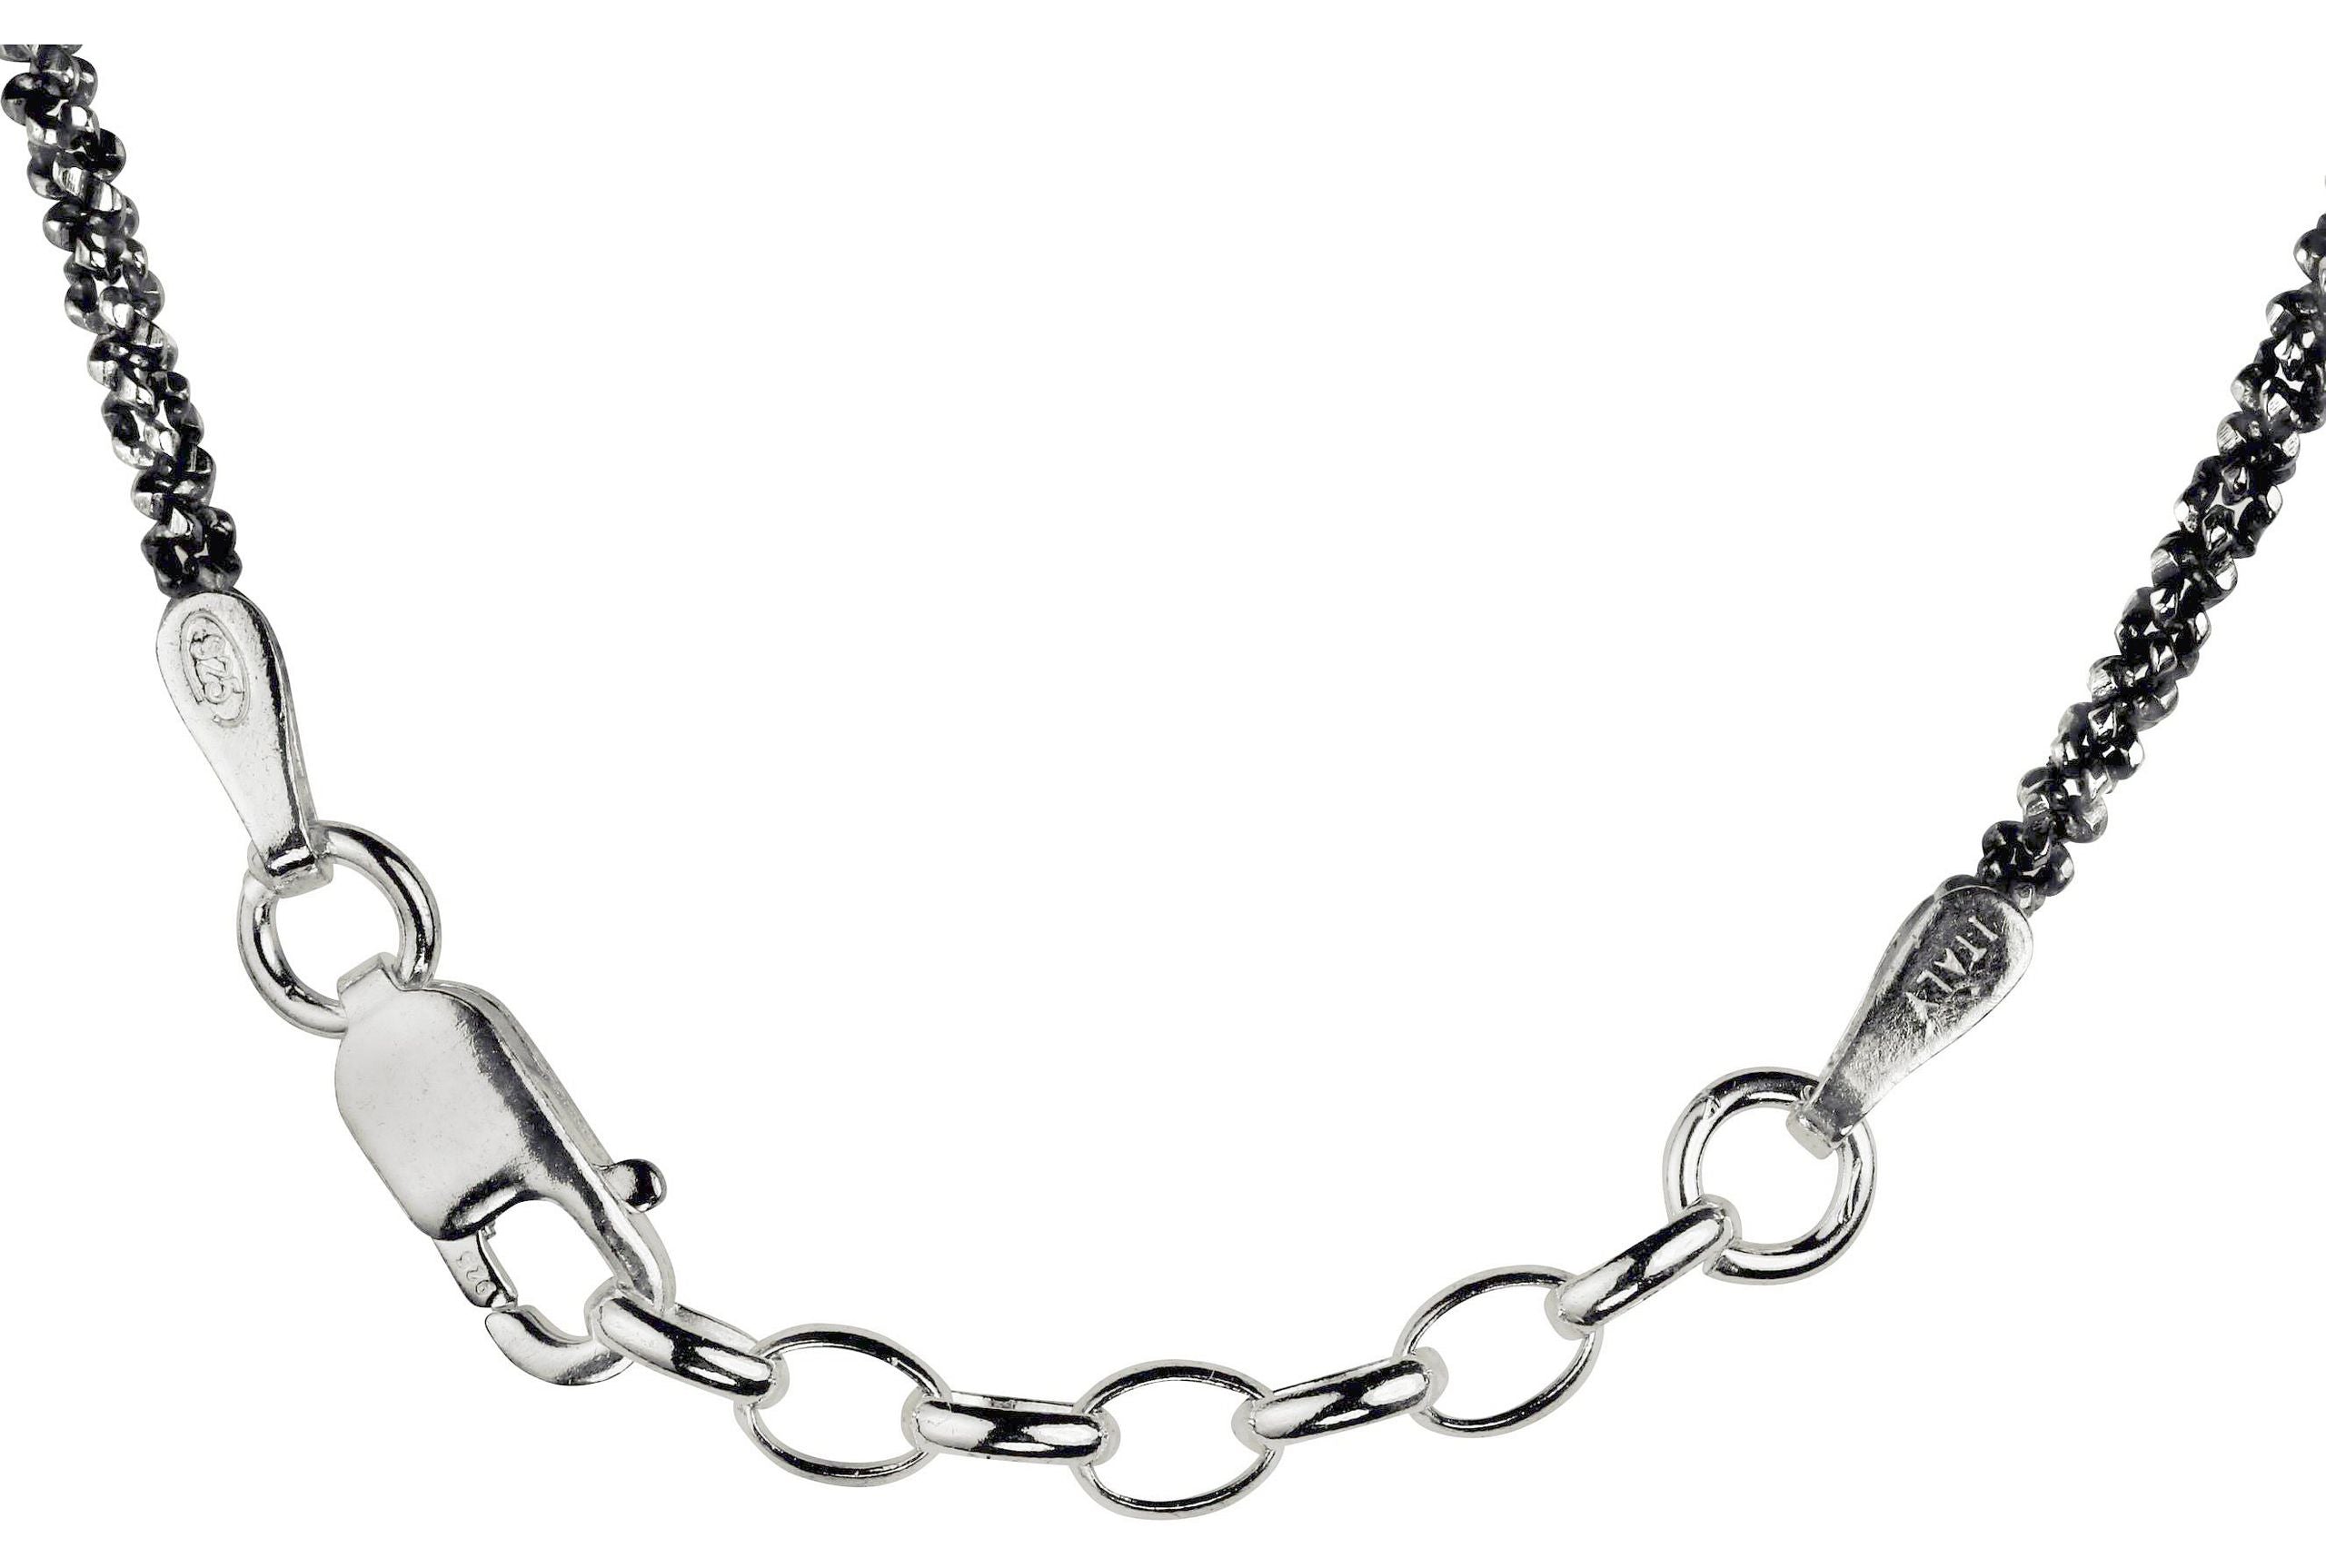 Geschwärztes Criss-Cross-Armband aus Silber für Damen. Im Bild der Karabinerverschluss und die Verlängerung des Armbands.